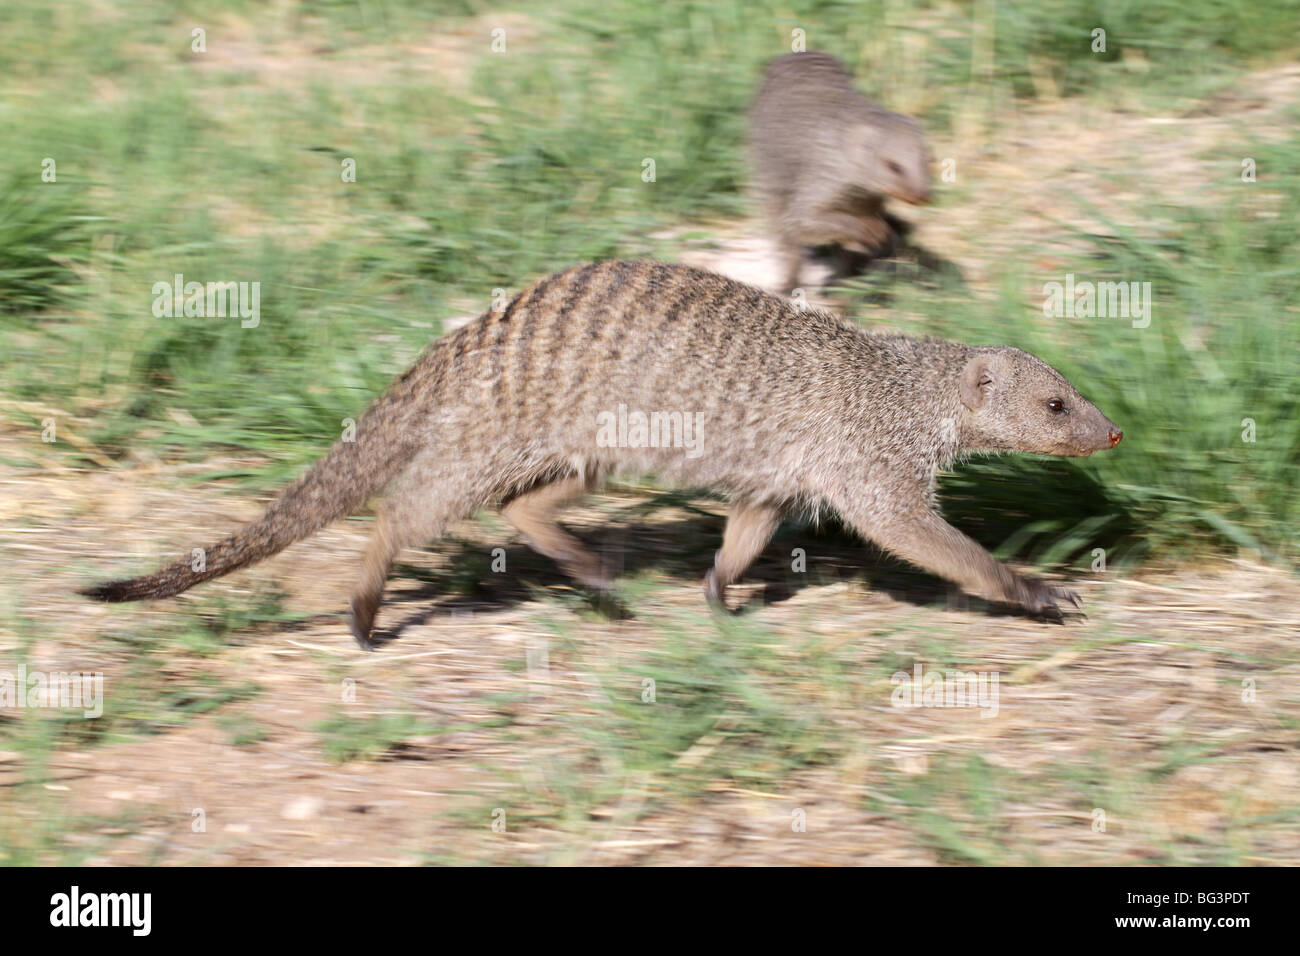 Banded mongoose, mungos mungo Stock Photo